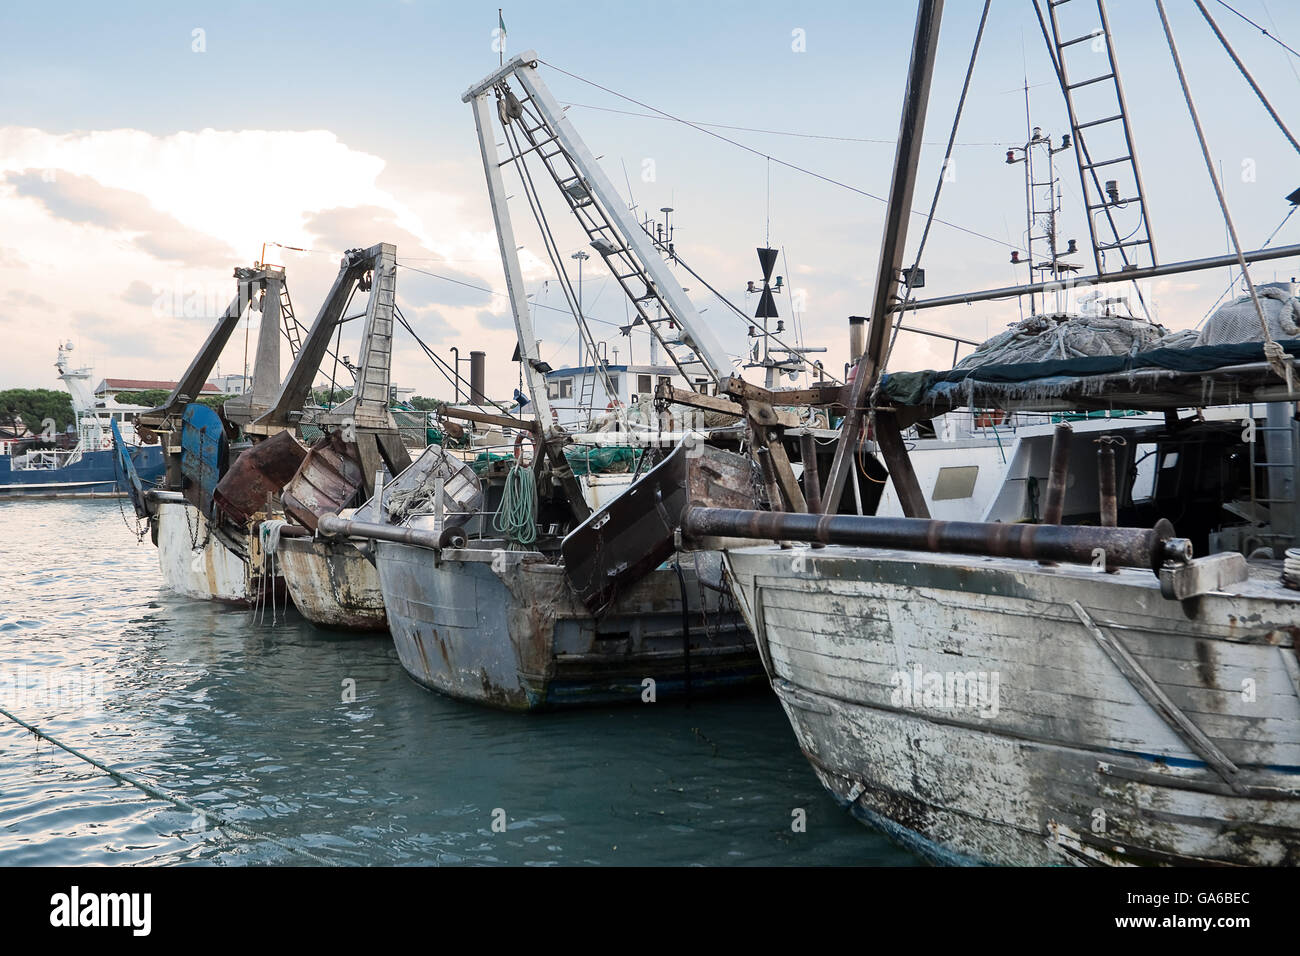 Port chanel of Pescara (Italy) Stock Photo